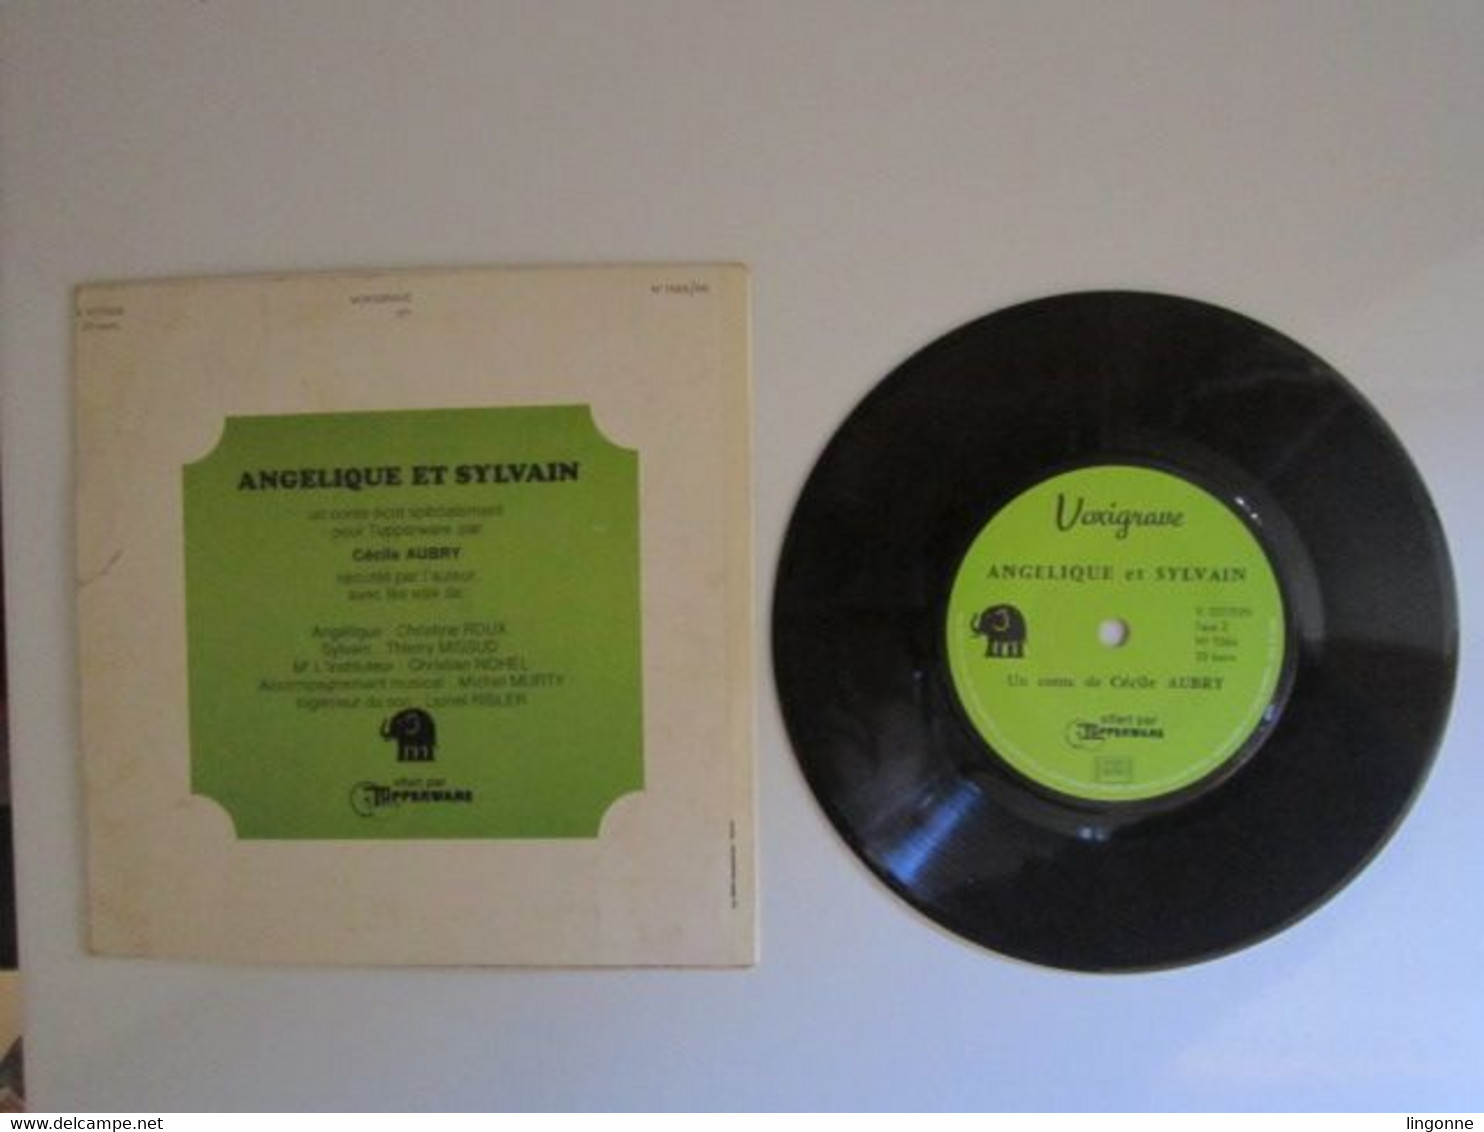 1971 Vinyle 45 Tours LIVRE DISQUE DE CECILE AUBRY " ANGELIQUE ET SYLVAIN " OFFERT PAR TUPPERWARE - Kinderlieder